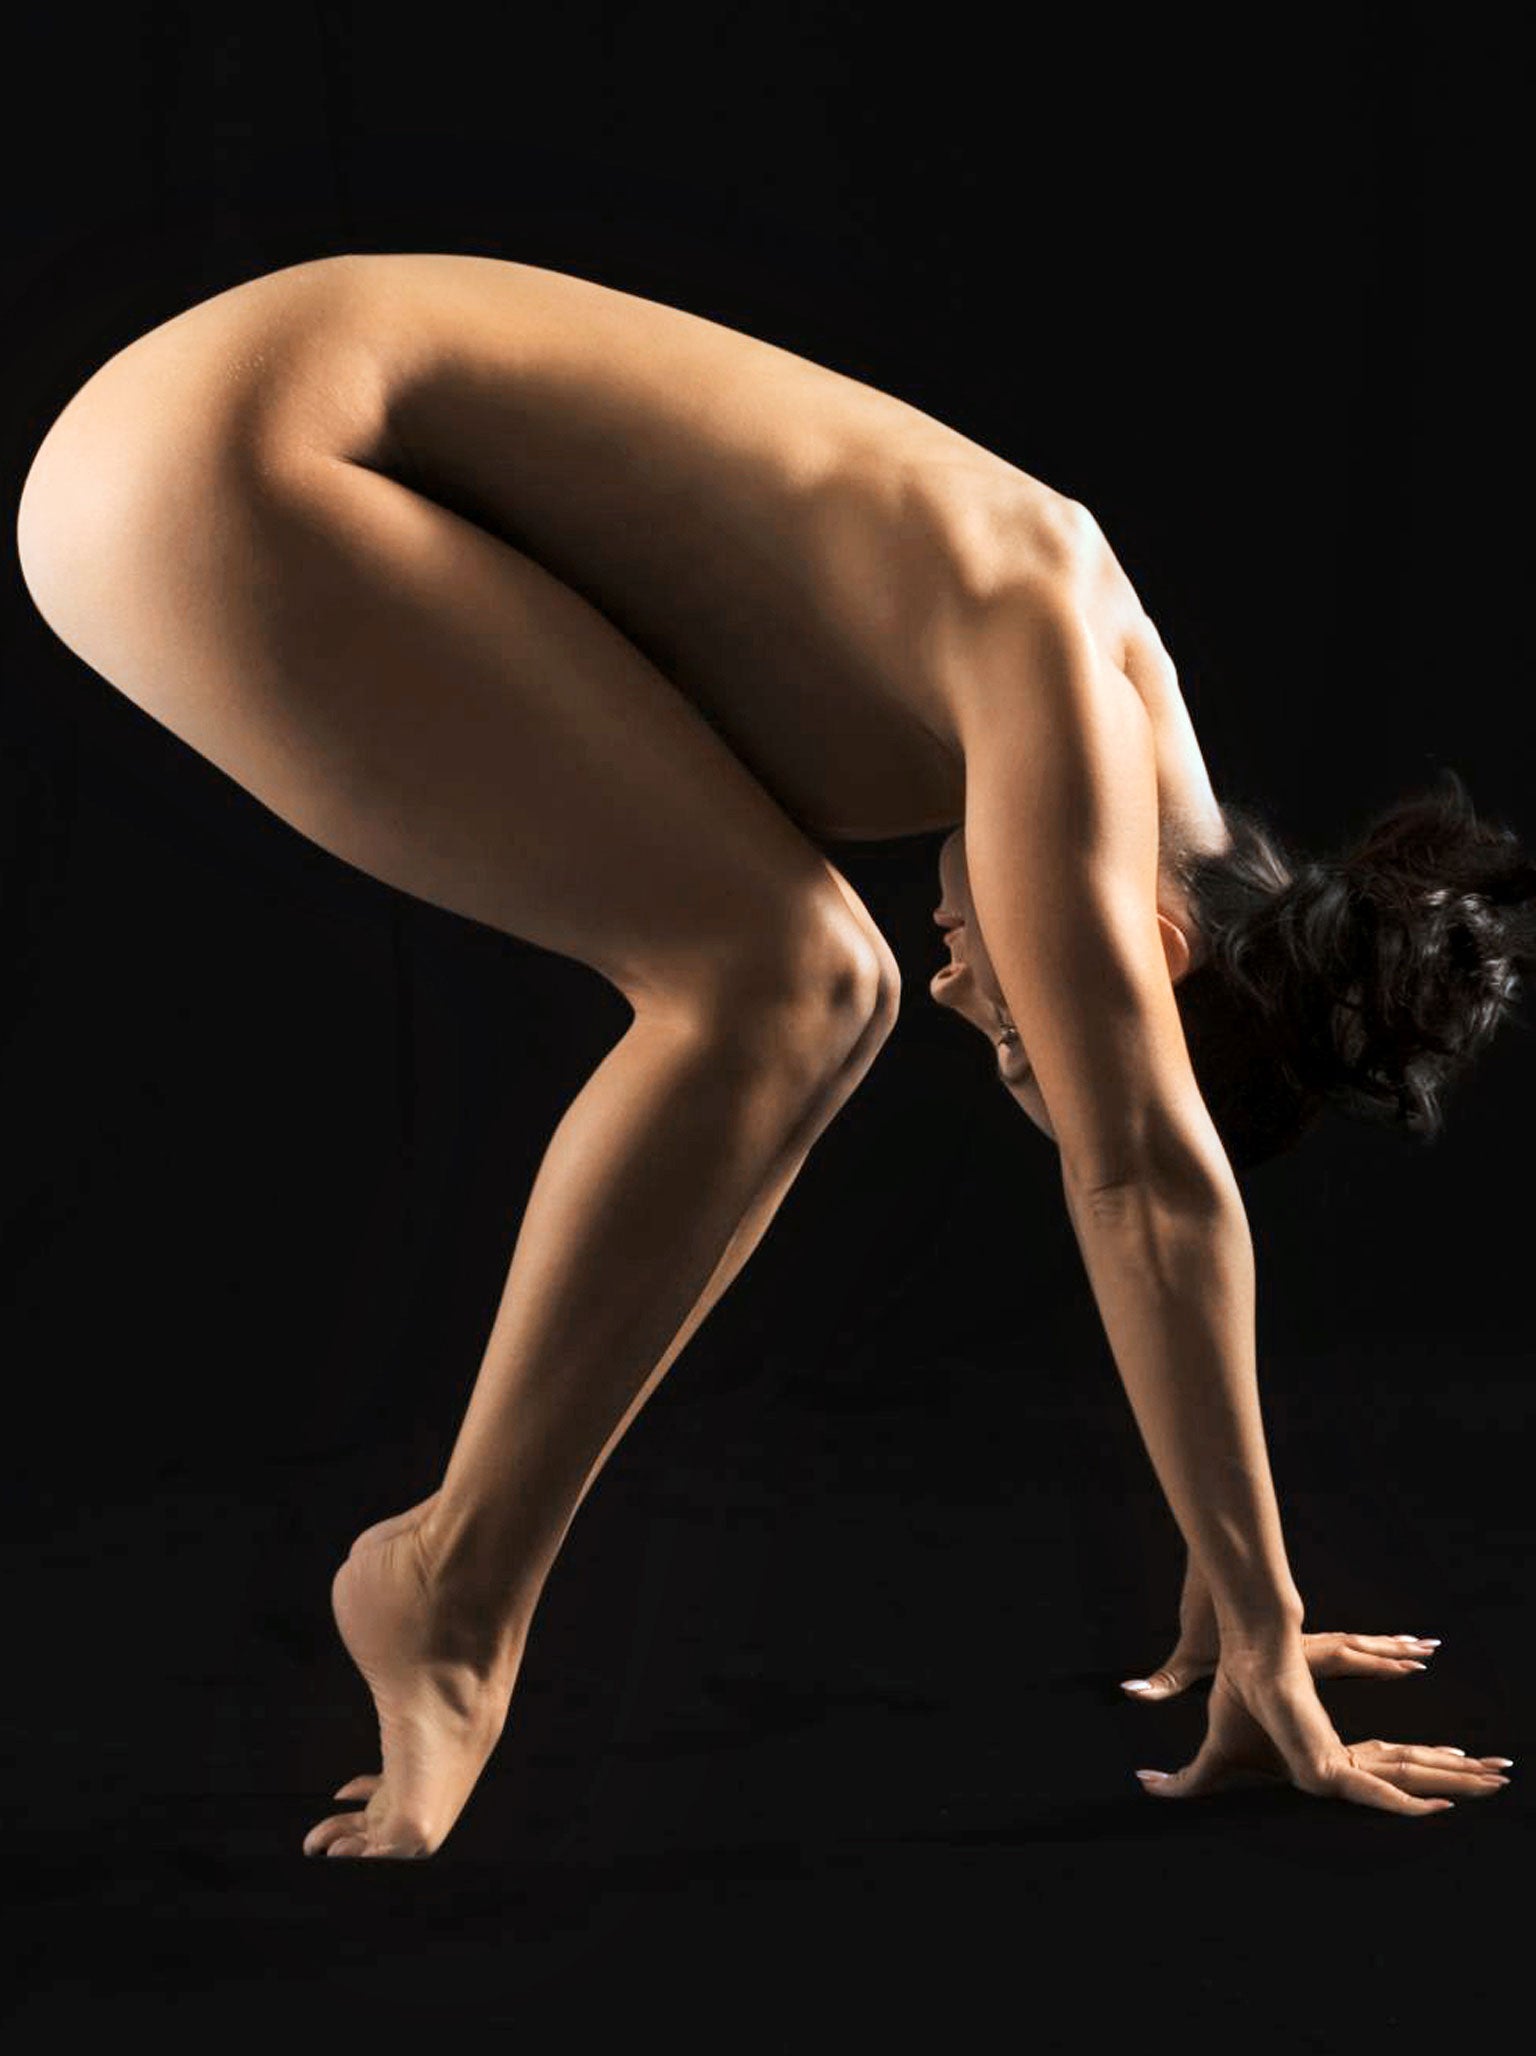 Women doing yoga naked